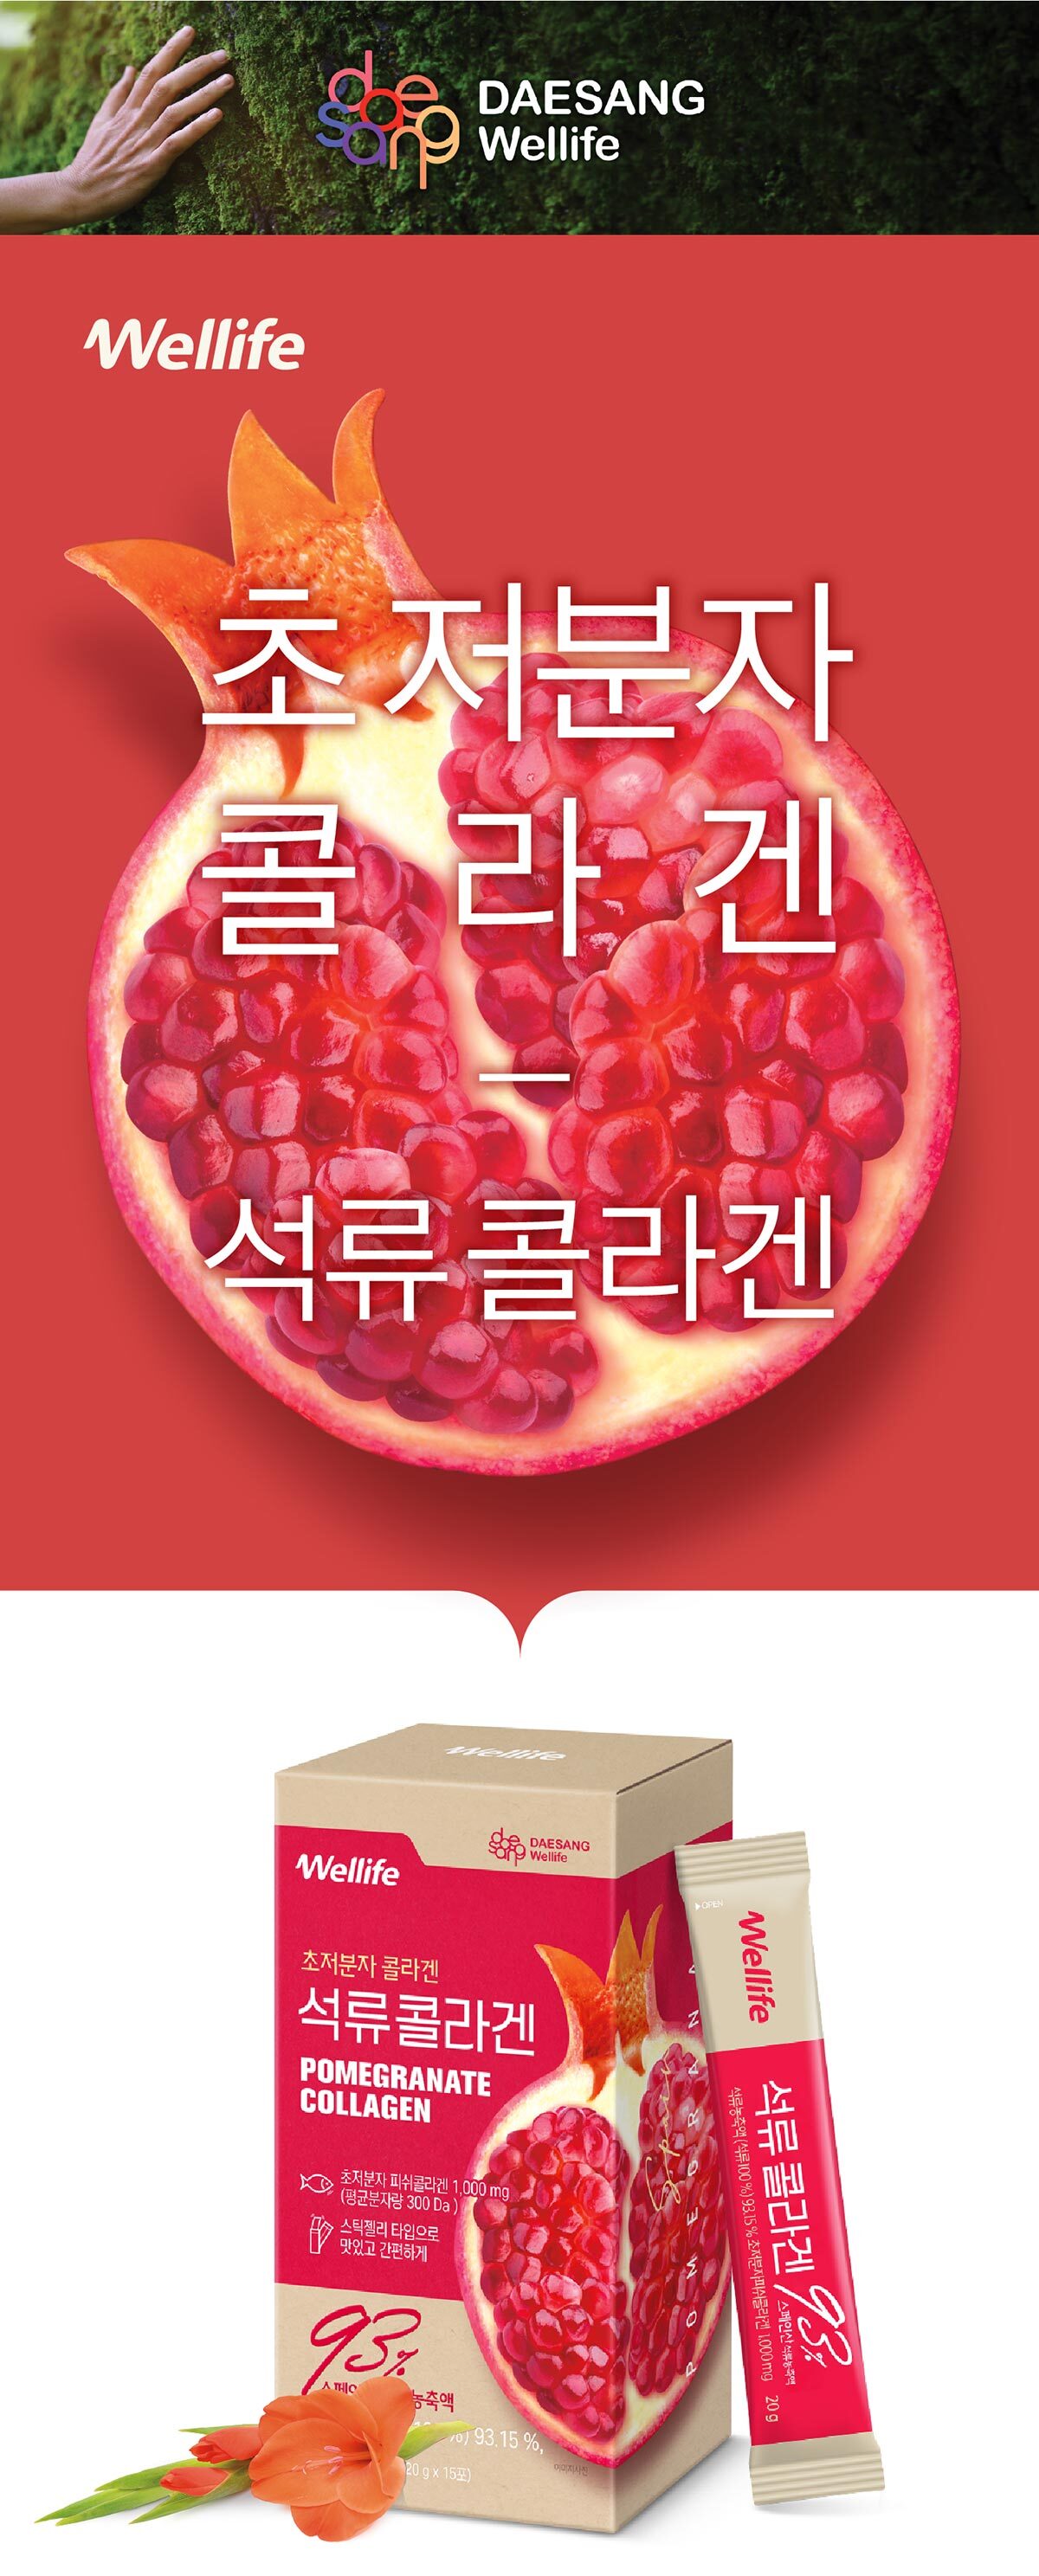 pomegranate_collagen_1.jpg